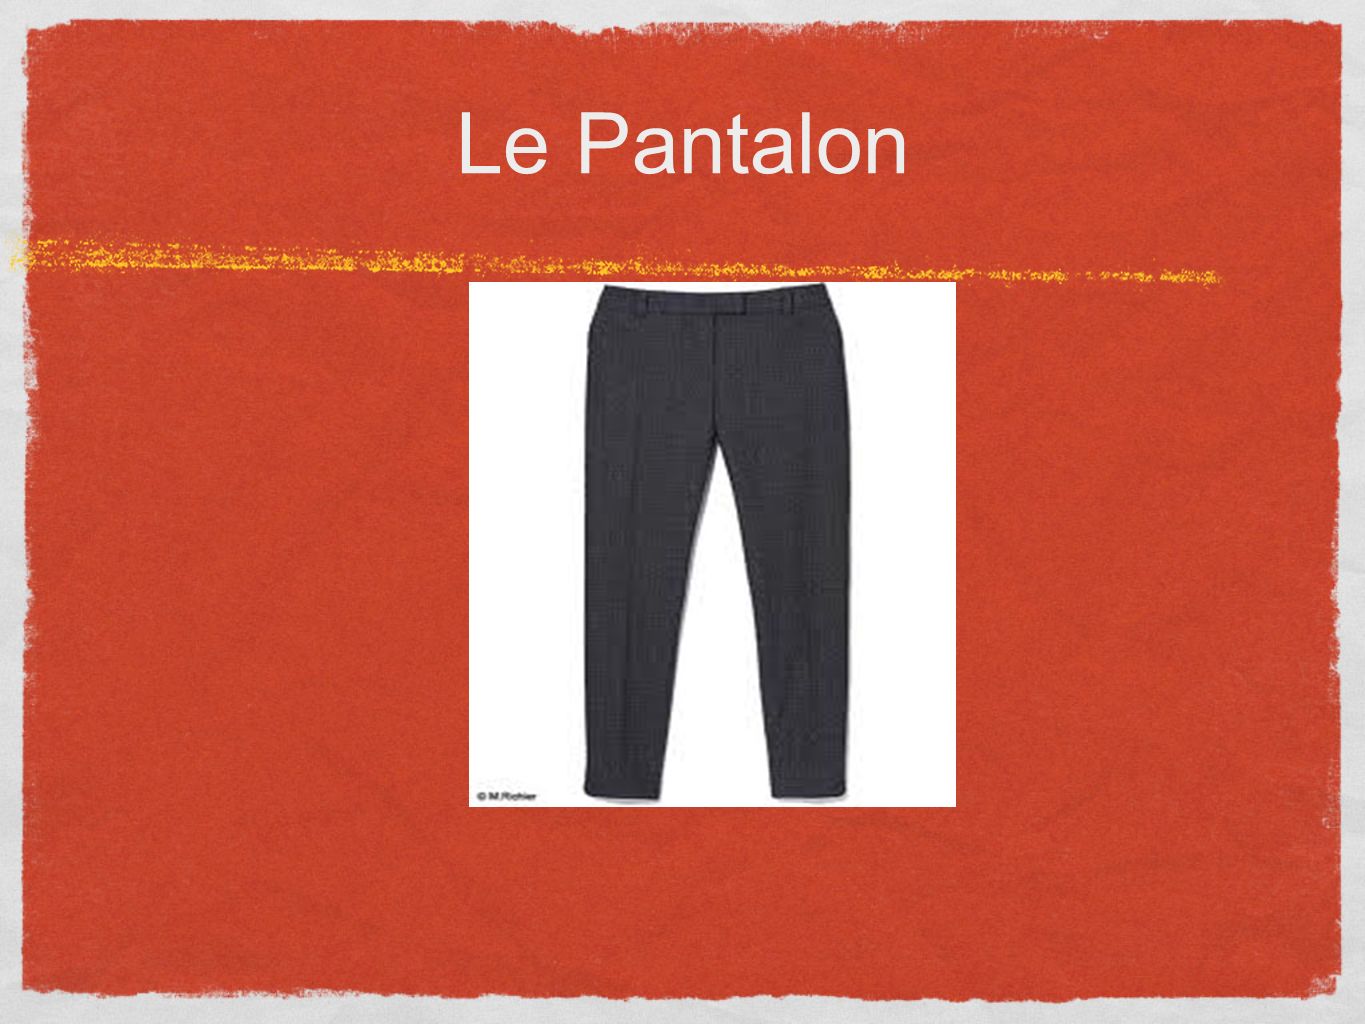 Le Pantalon